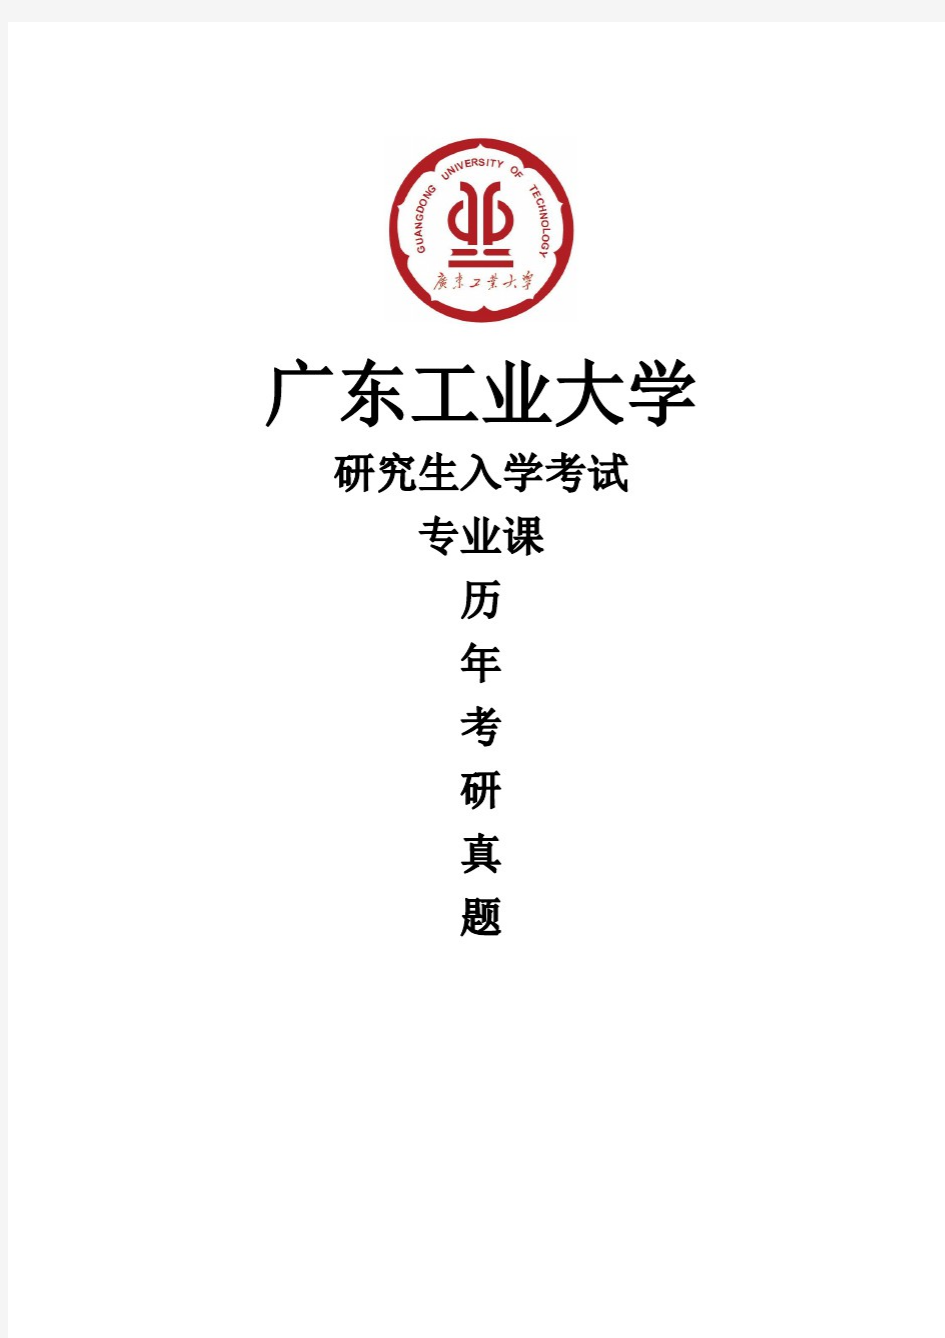 广东工业大学《864城市规划设计作图》[官方]历年考研真题(2019-2020)完整版